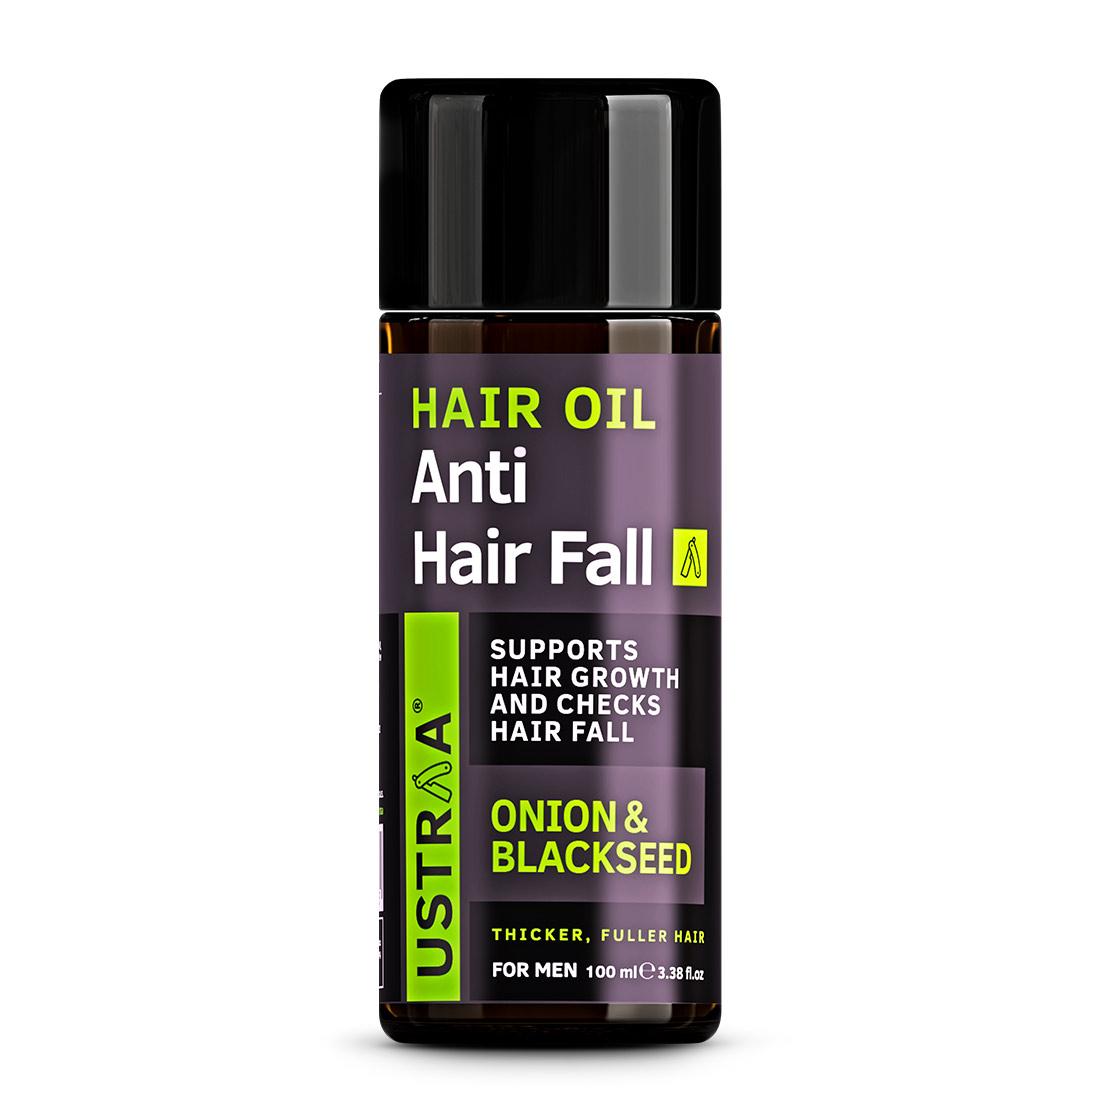 Hair Oil Anti Hair Fall 100ml, With Onion & Blackseed